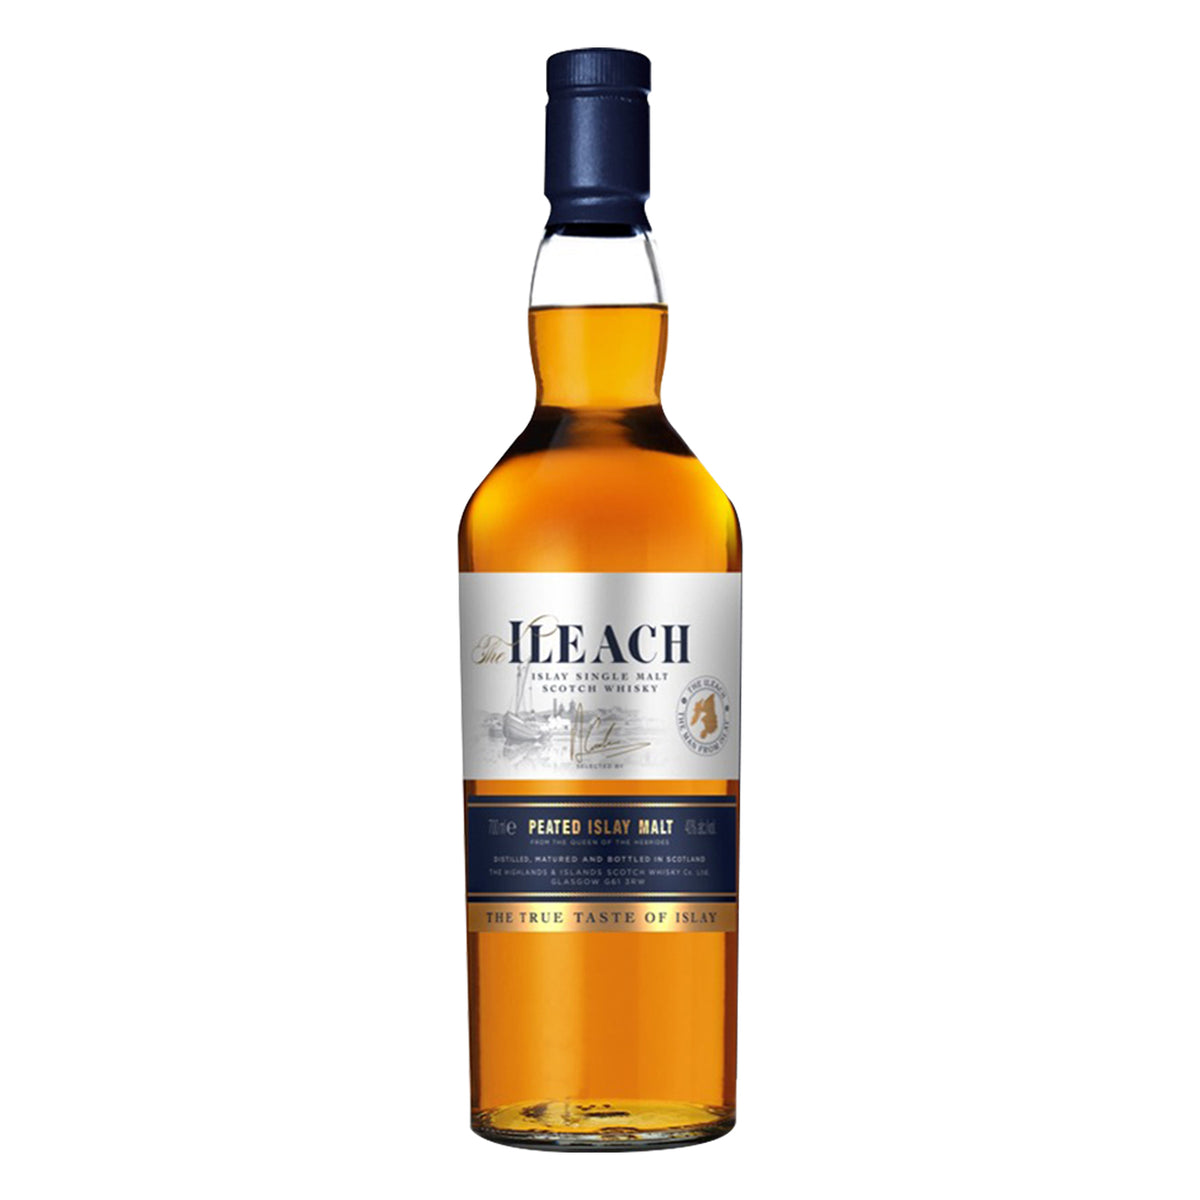 Ileach Islay Single Malt Scotch Whisky 40%